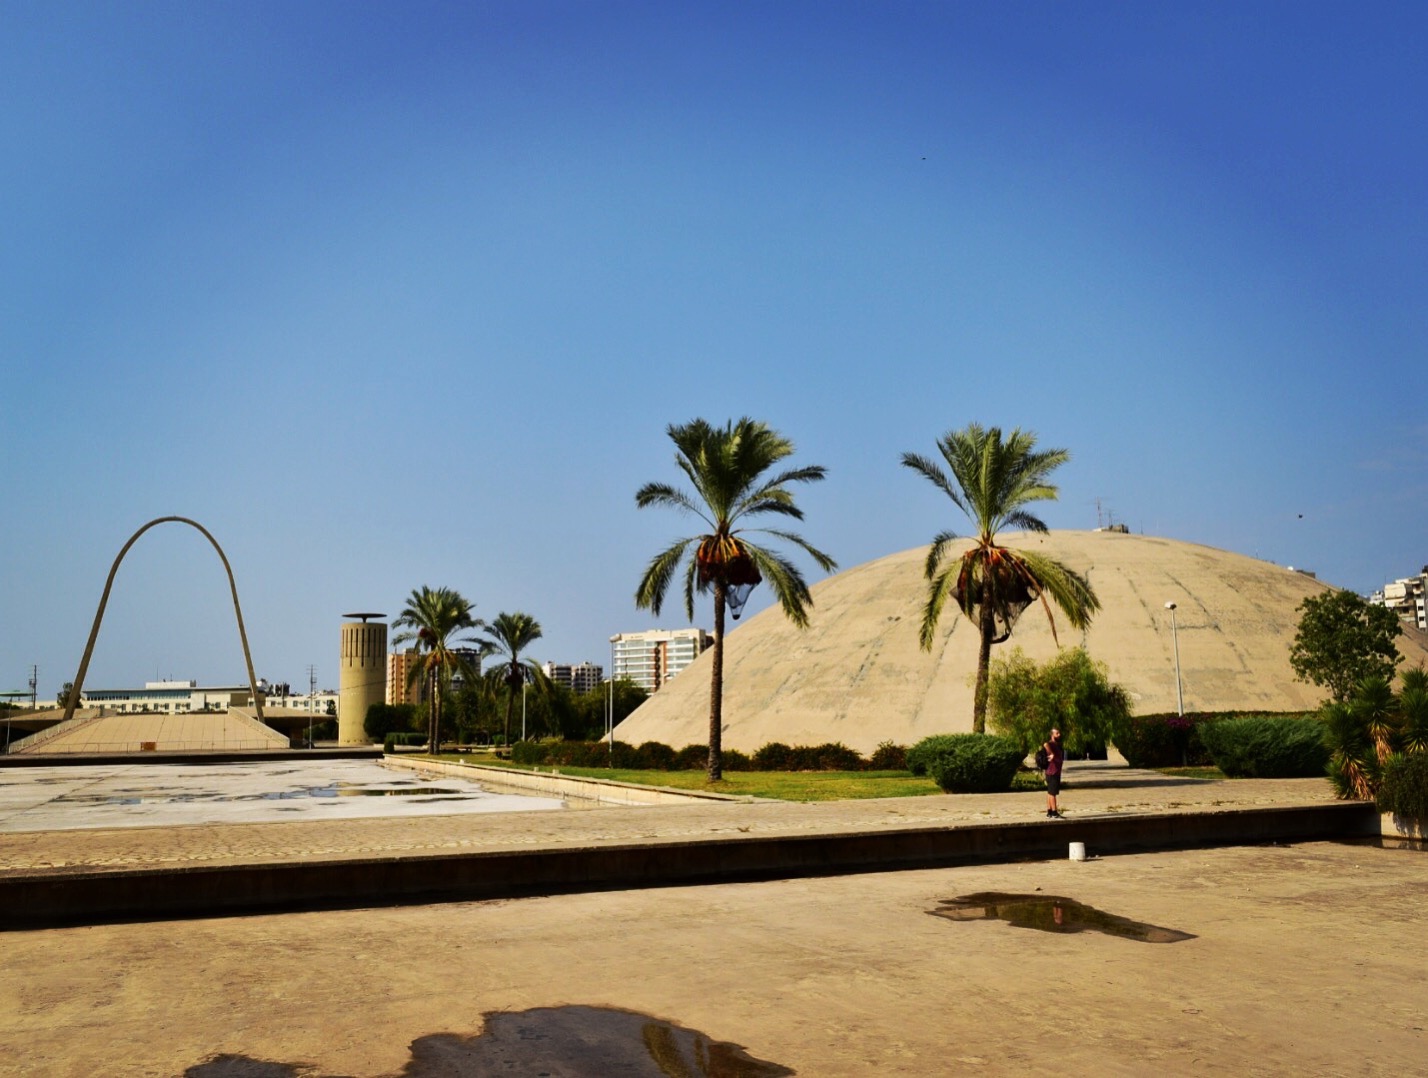 Obras de Niemeyer em Tripoli, cidade que esteve em conflito junto com a guerra da Síria. Líbano Seguro.